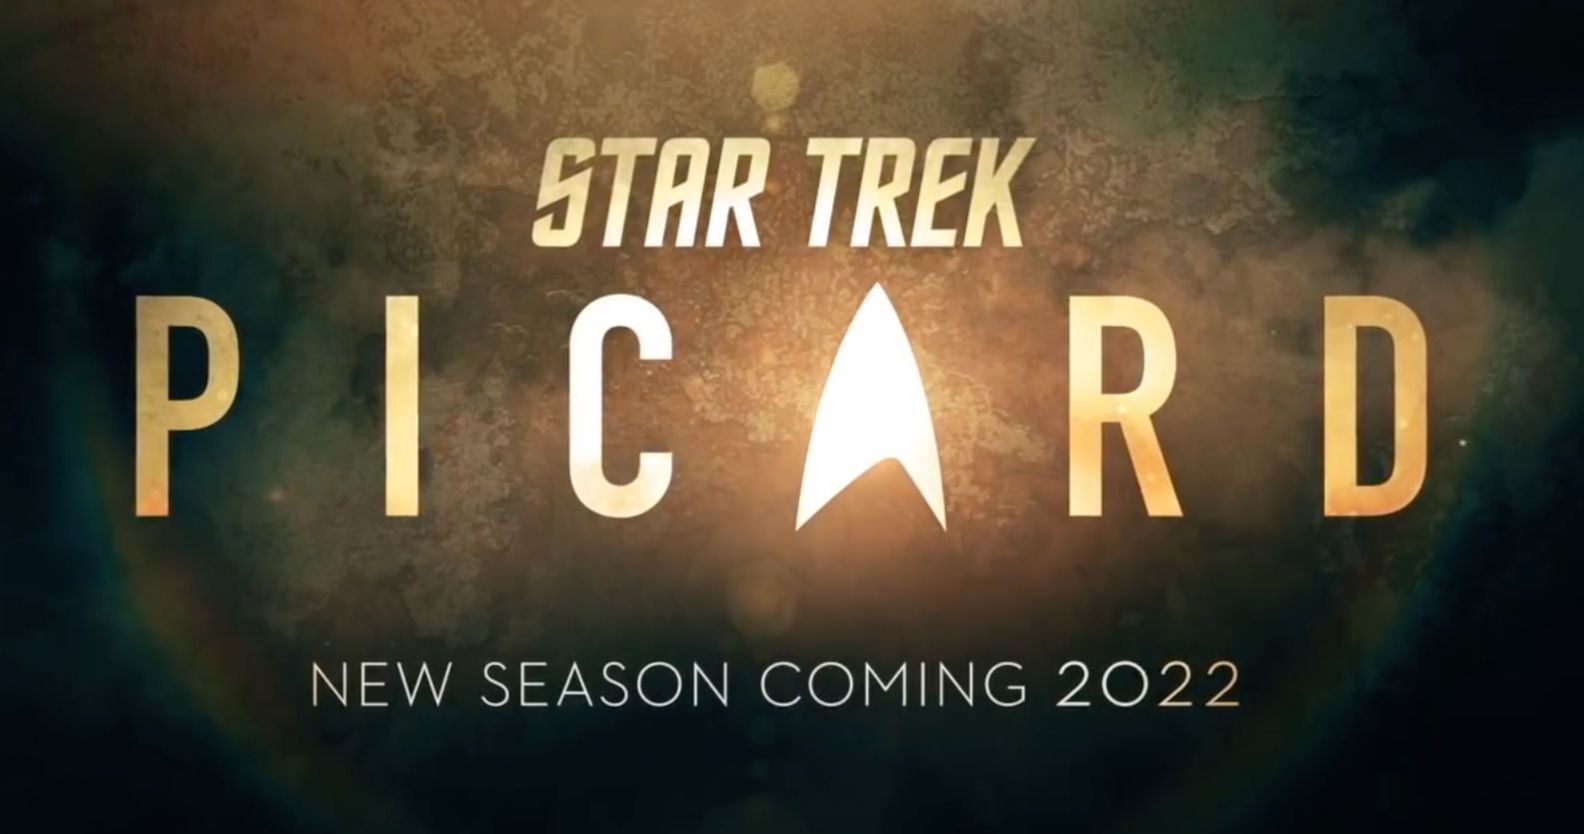 Star Trek: Picard Season 2 Teaser Trailer Heralds the Return of Q